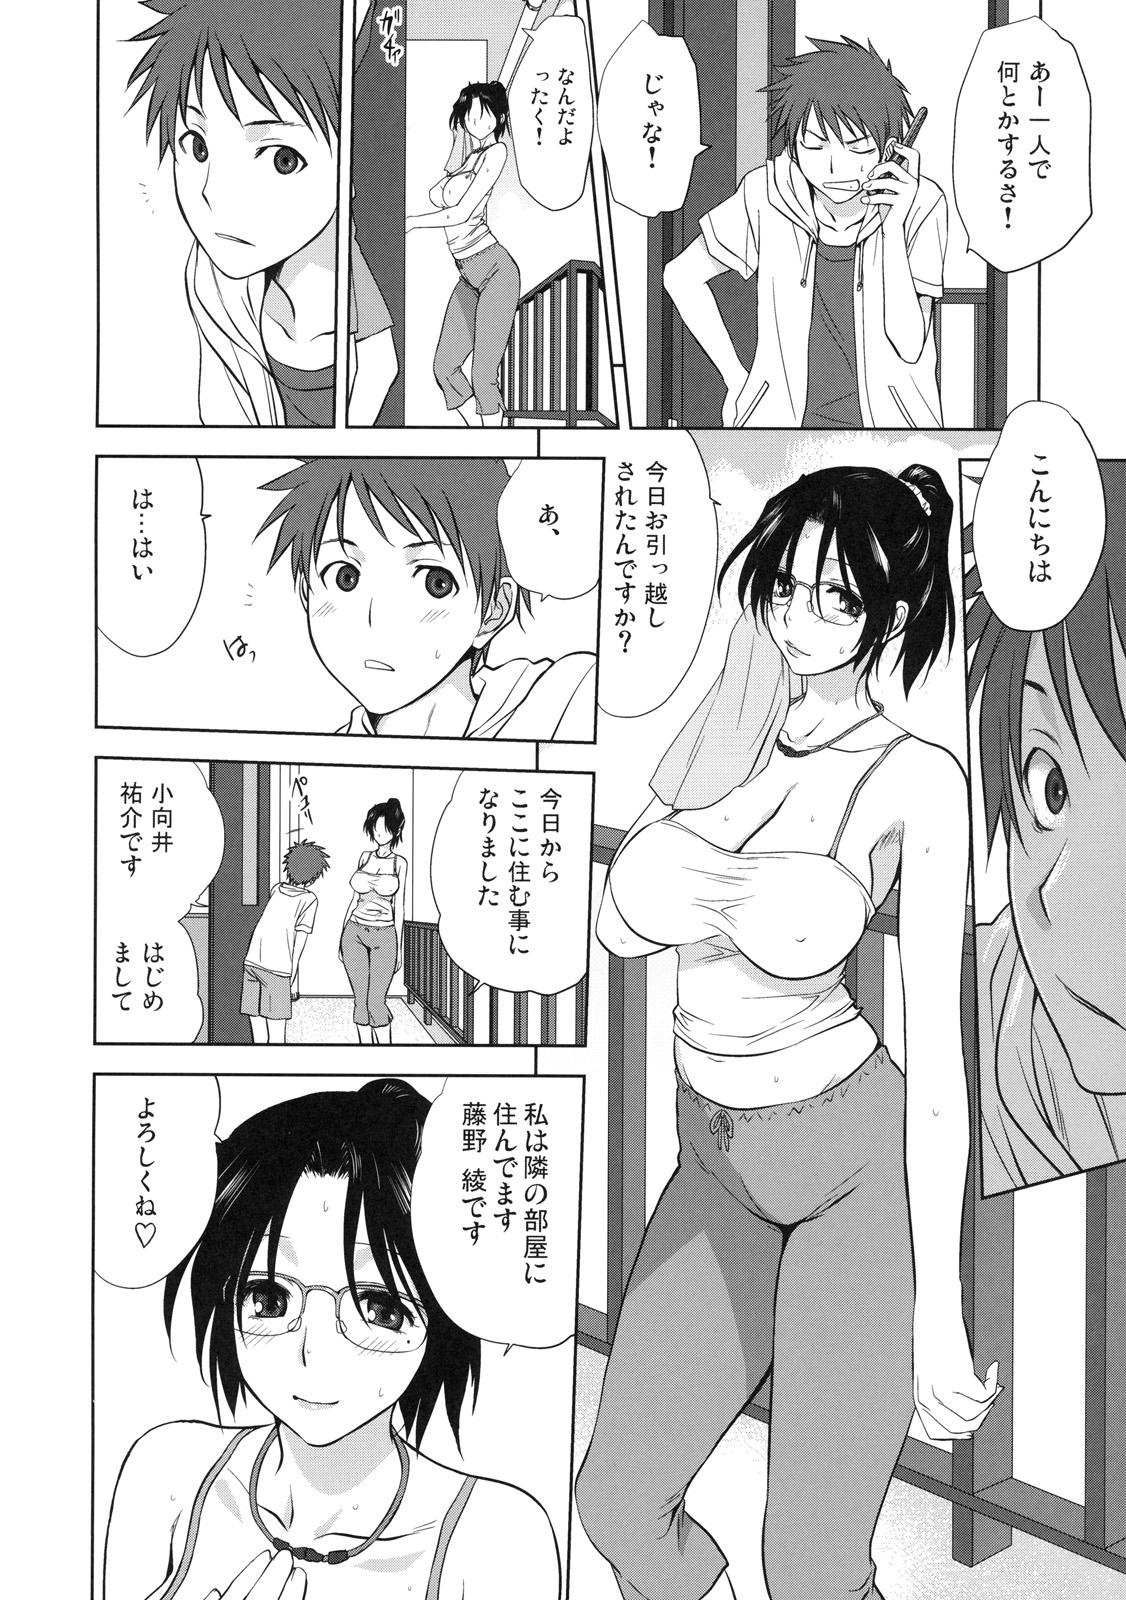 Caught Shinzui Shinseikatsu Ver. Vol. 4 Hardcorend - Page 7